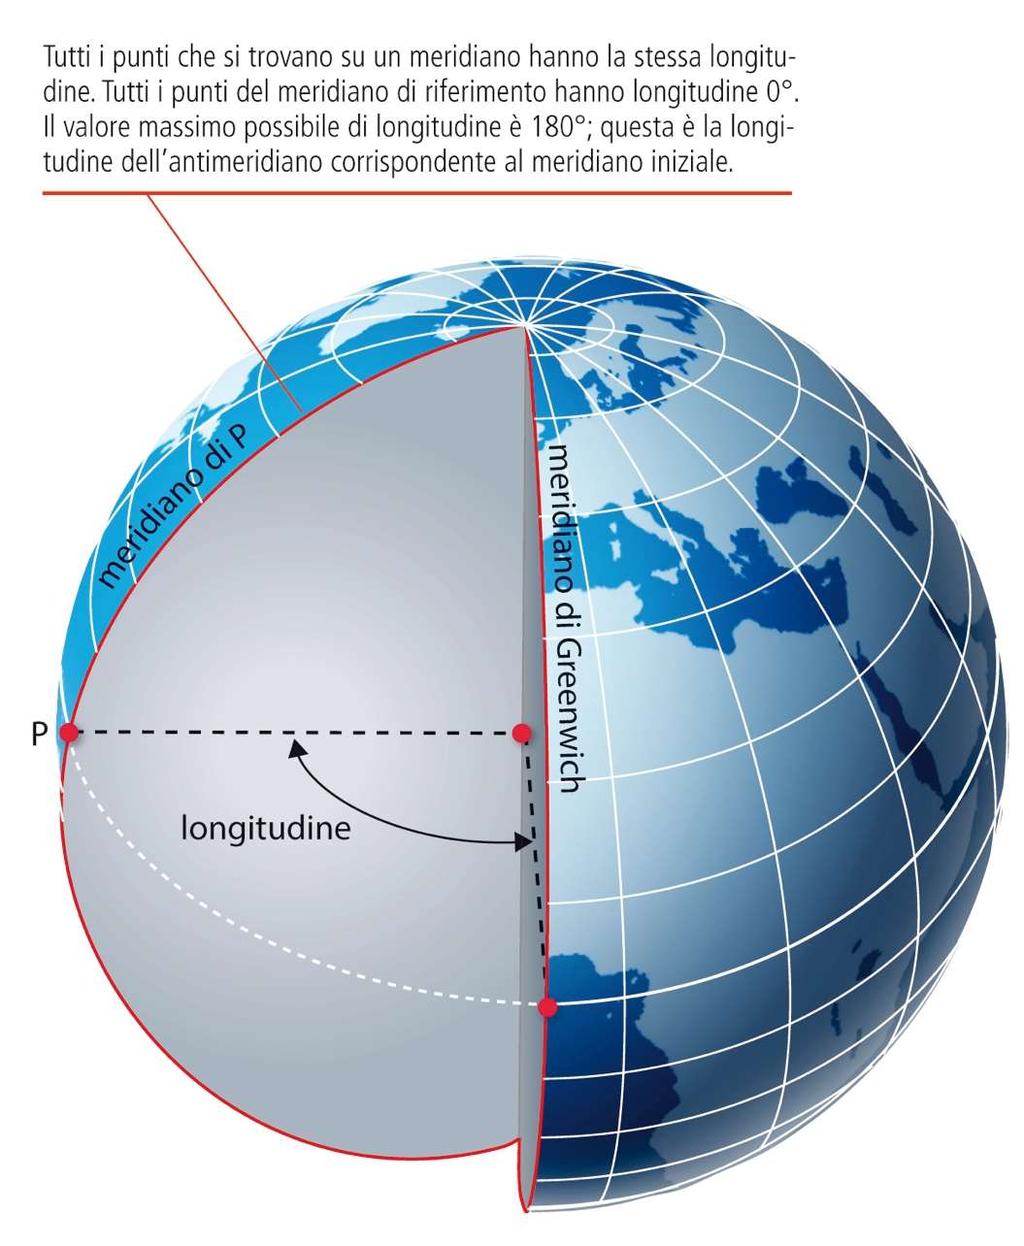 Le coordinate geografiche Longitudine misurata in